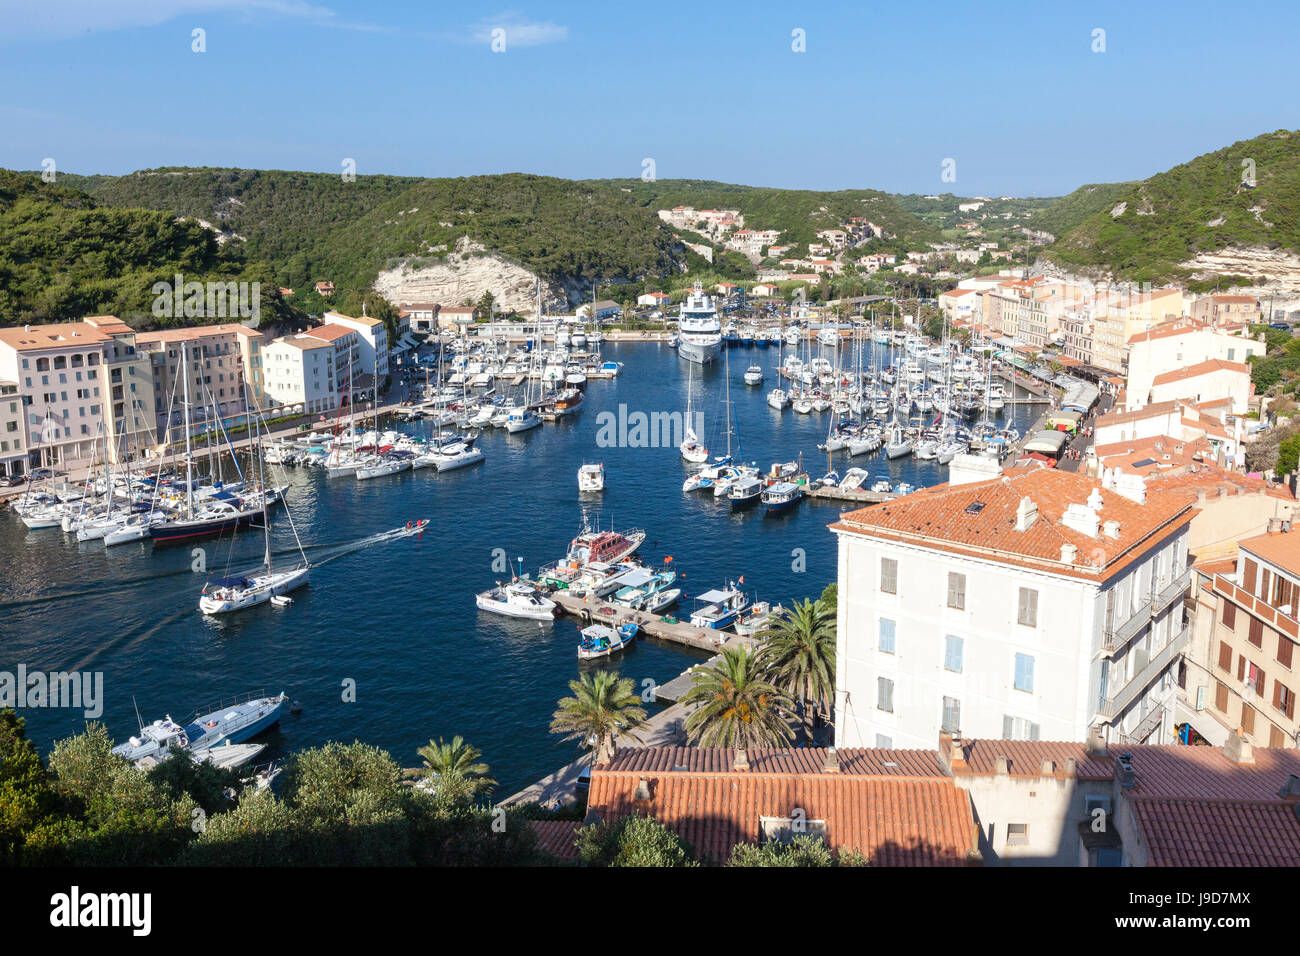 La végétation verte entoure la ville médiévale et port de Bonifacio, Corse, France, Europe, Méditerranée Banque D'Images